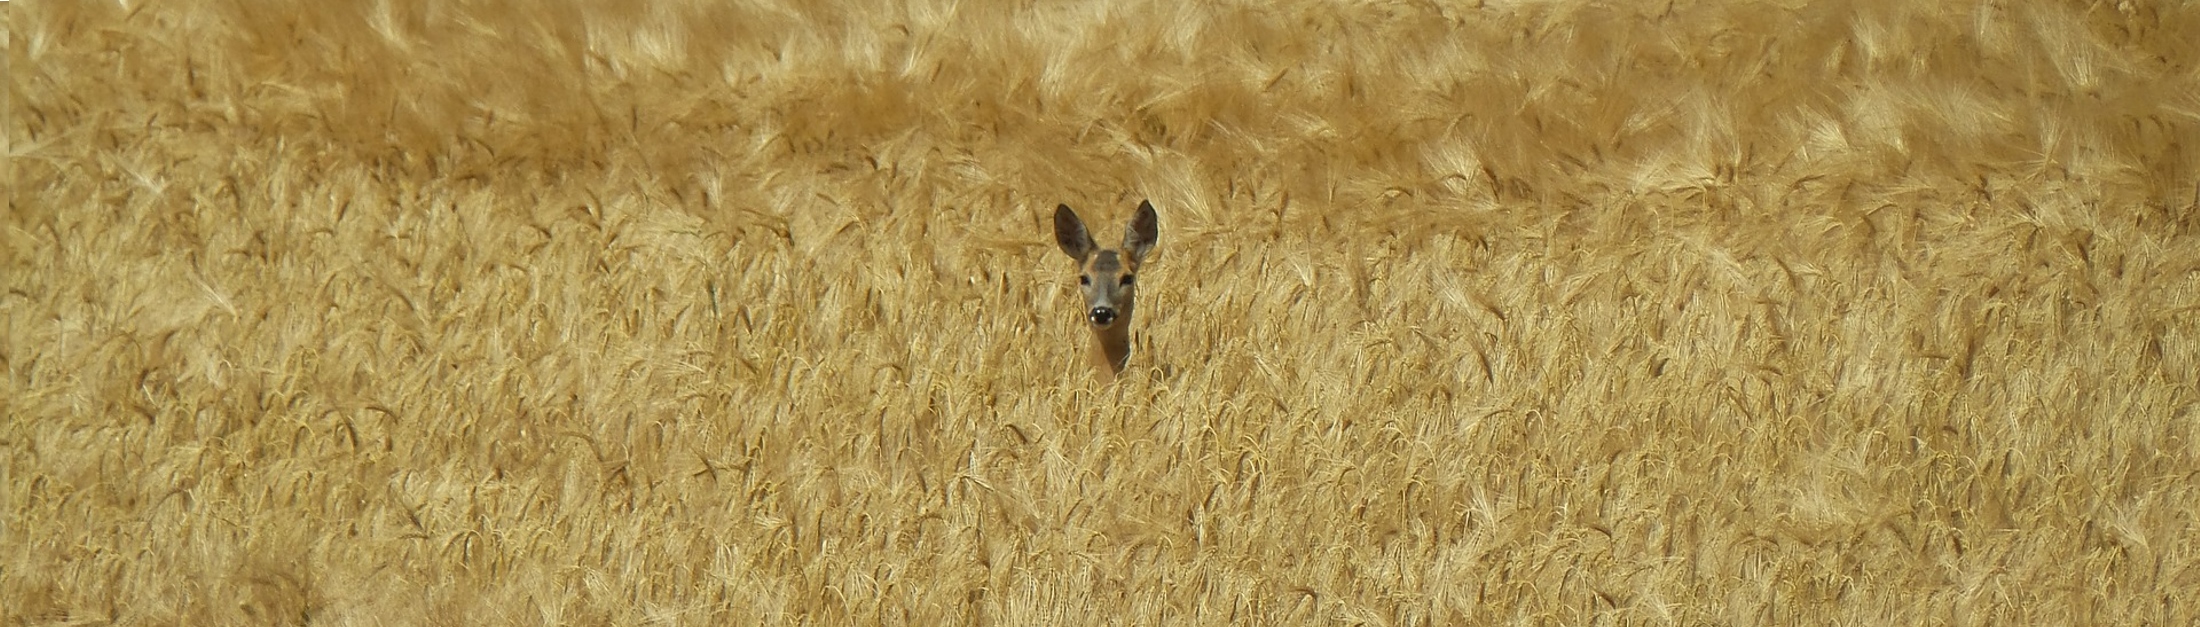 Foto von einem Reh in einem Kornfeld